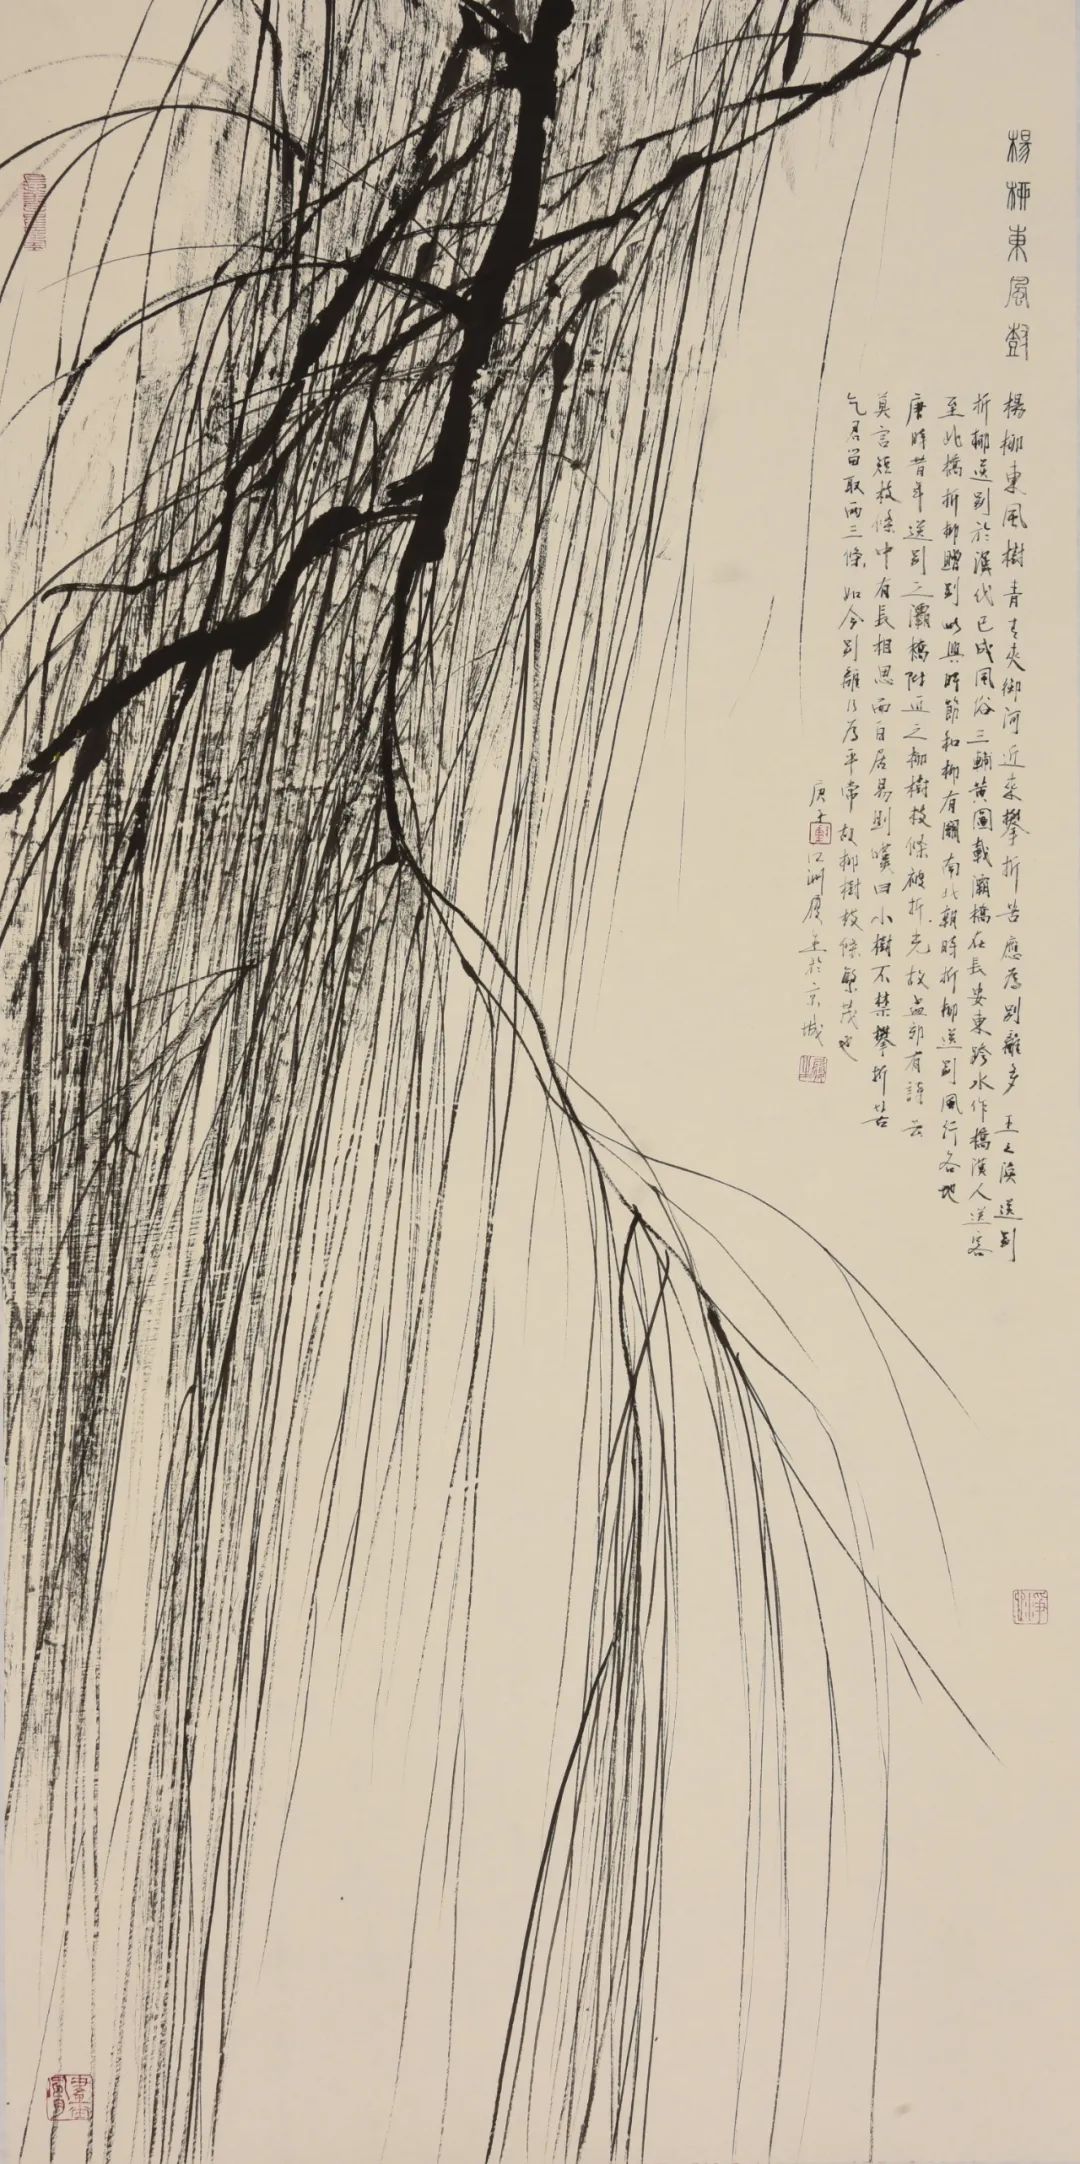 杨柳东风树 138cm×69cm，纸本，水墨，2020年